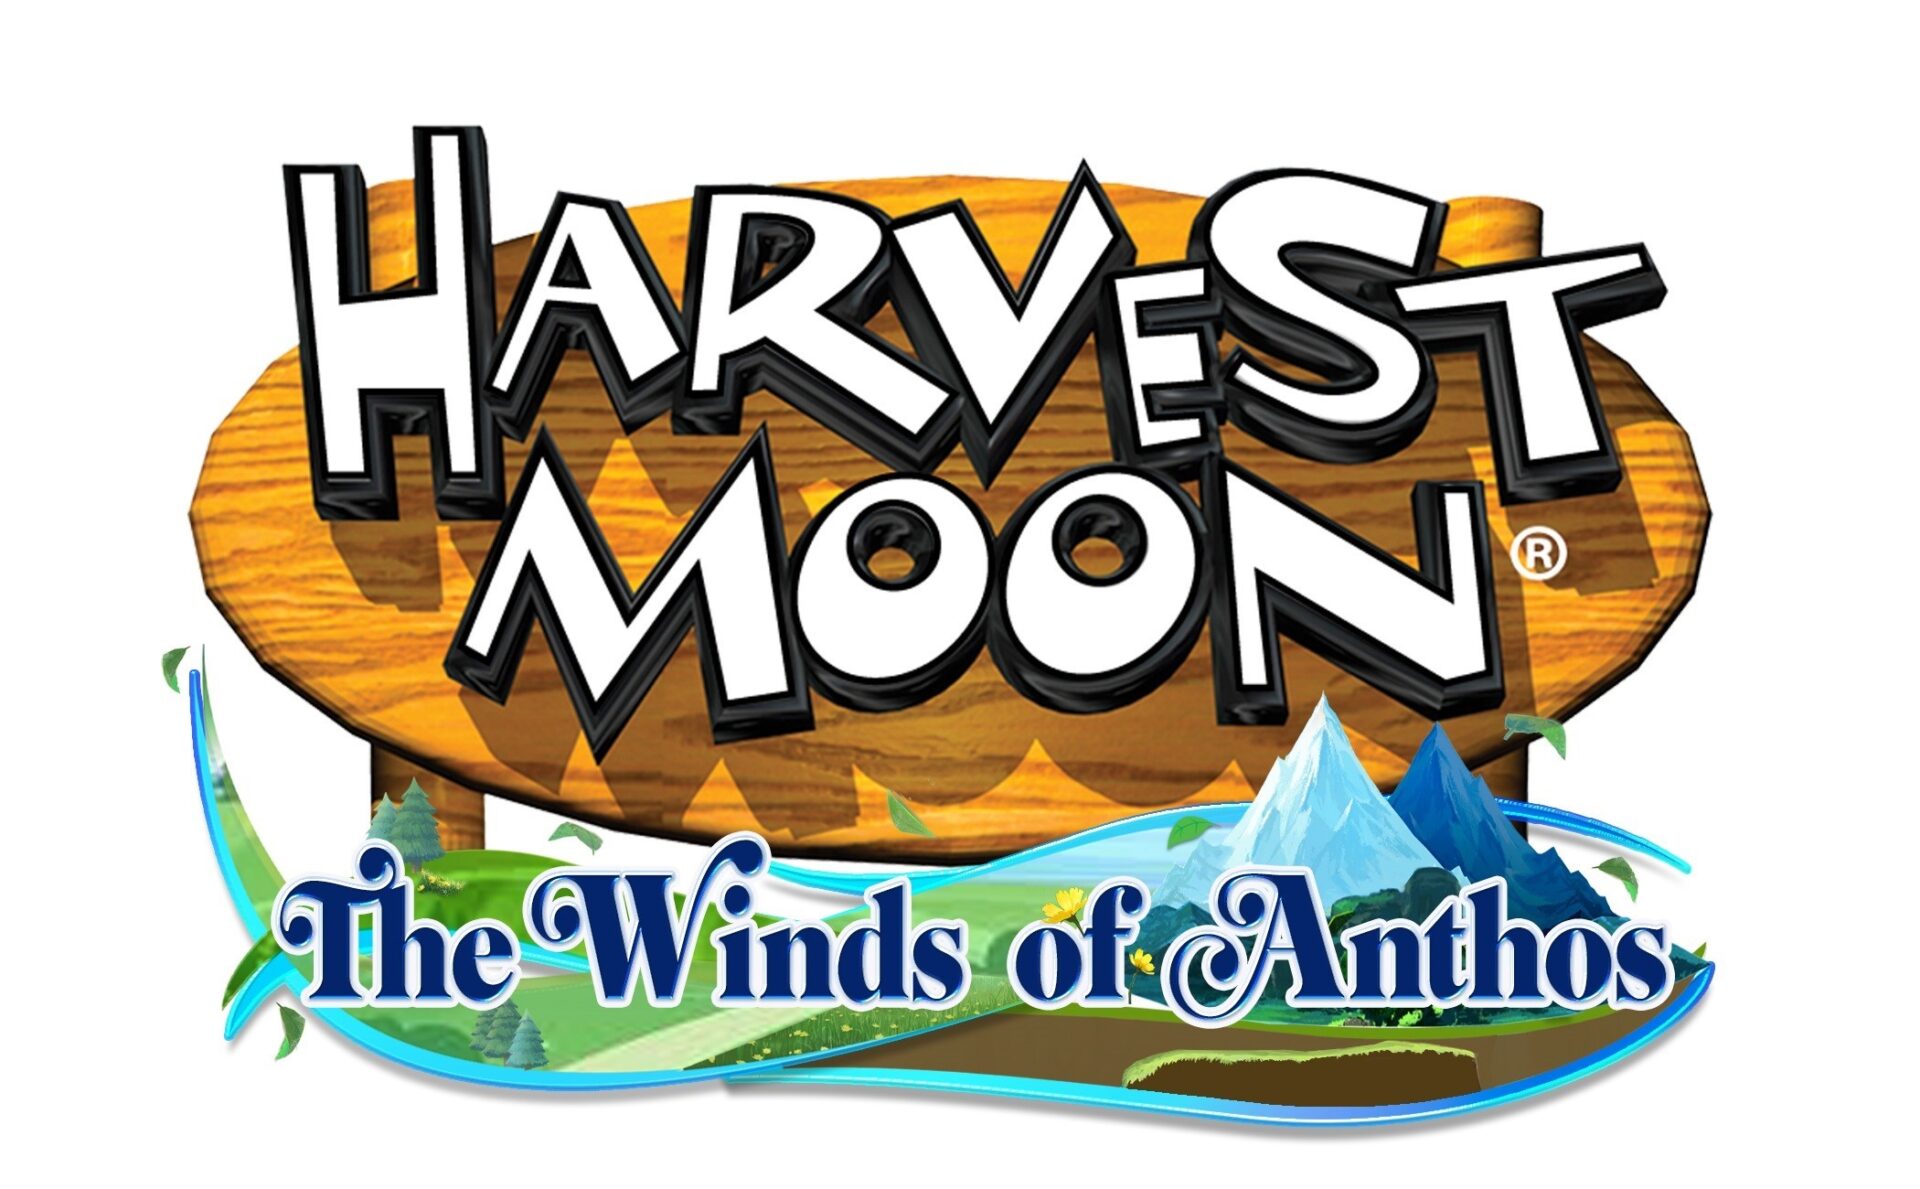 ยังขอไปต่อ Harvest Moon: The Winds of Anthos ภาคใหม่ฉลองครบ 25 ปี